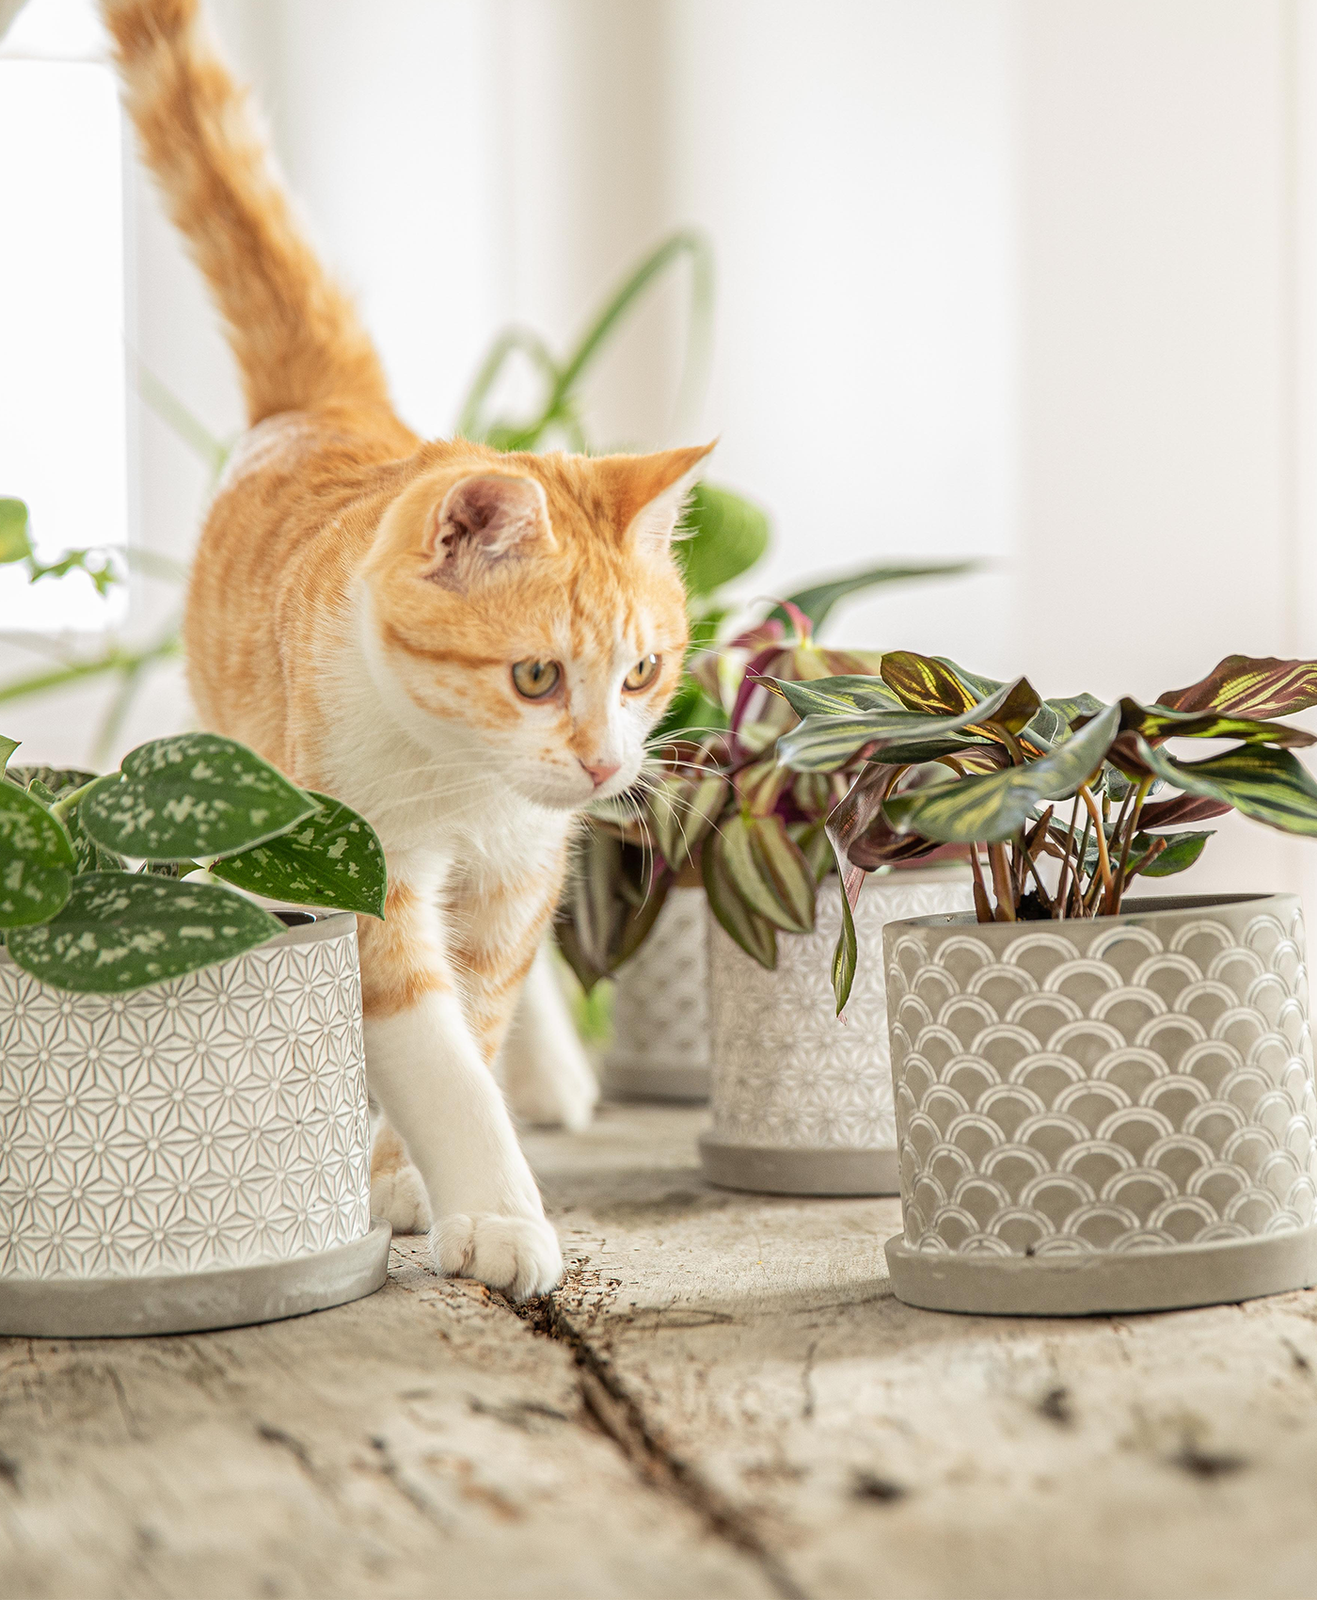 Un chat se promène sur un meuble en bois entouré de plantes vertes en pot